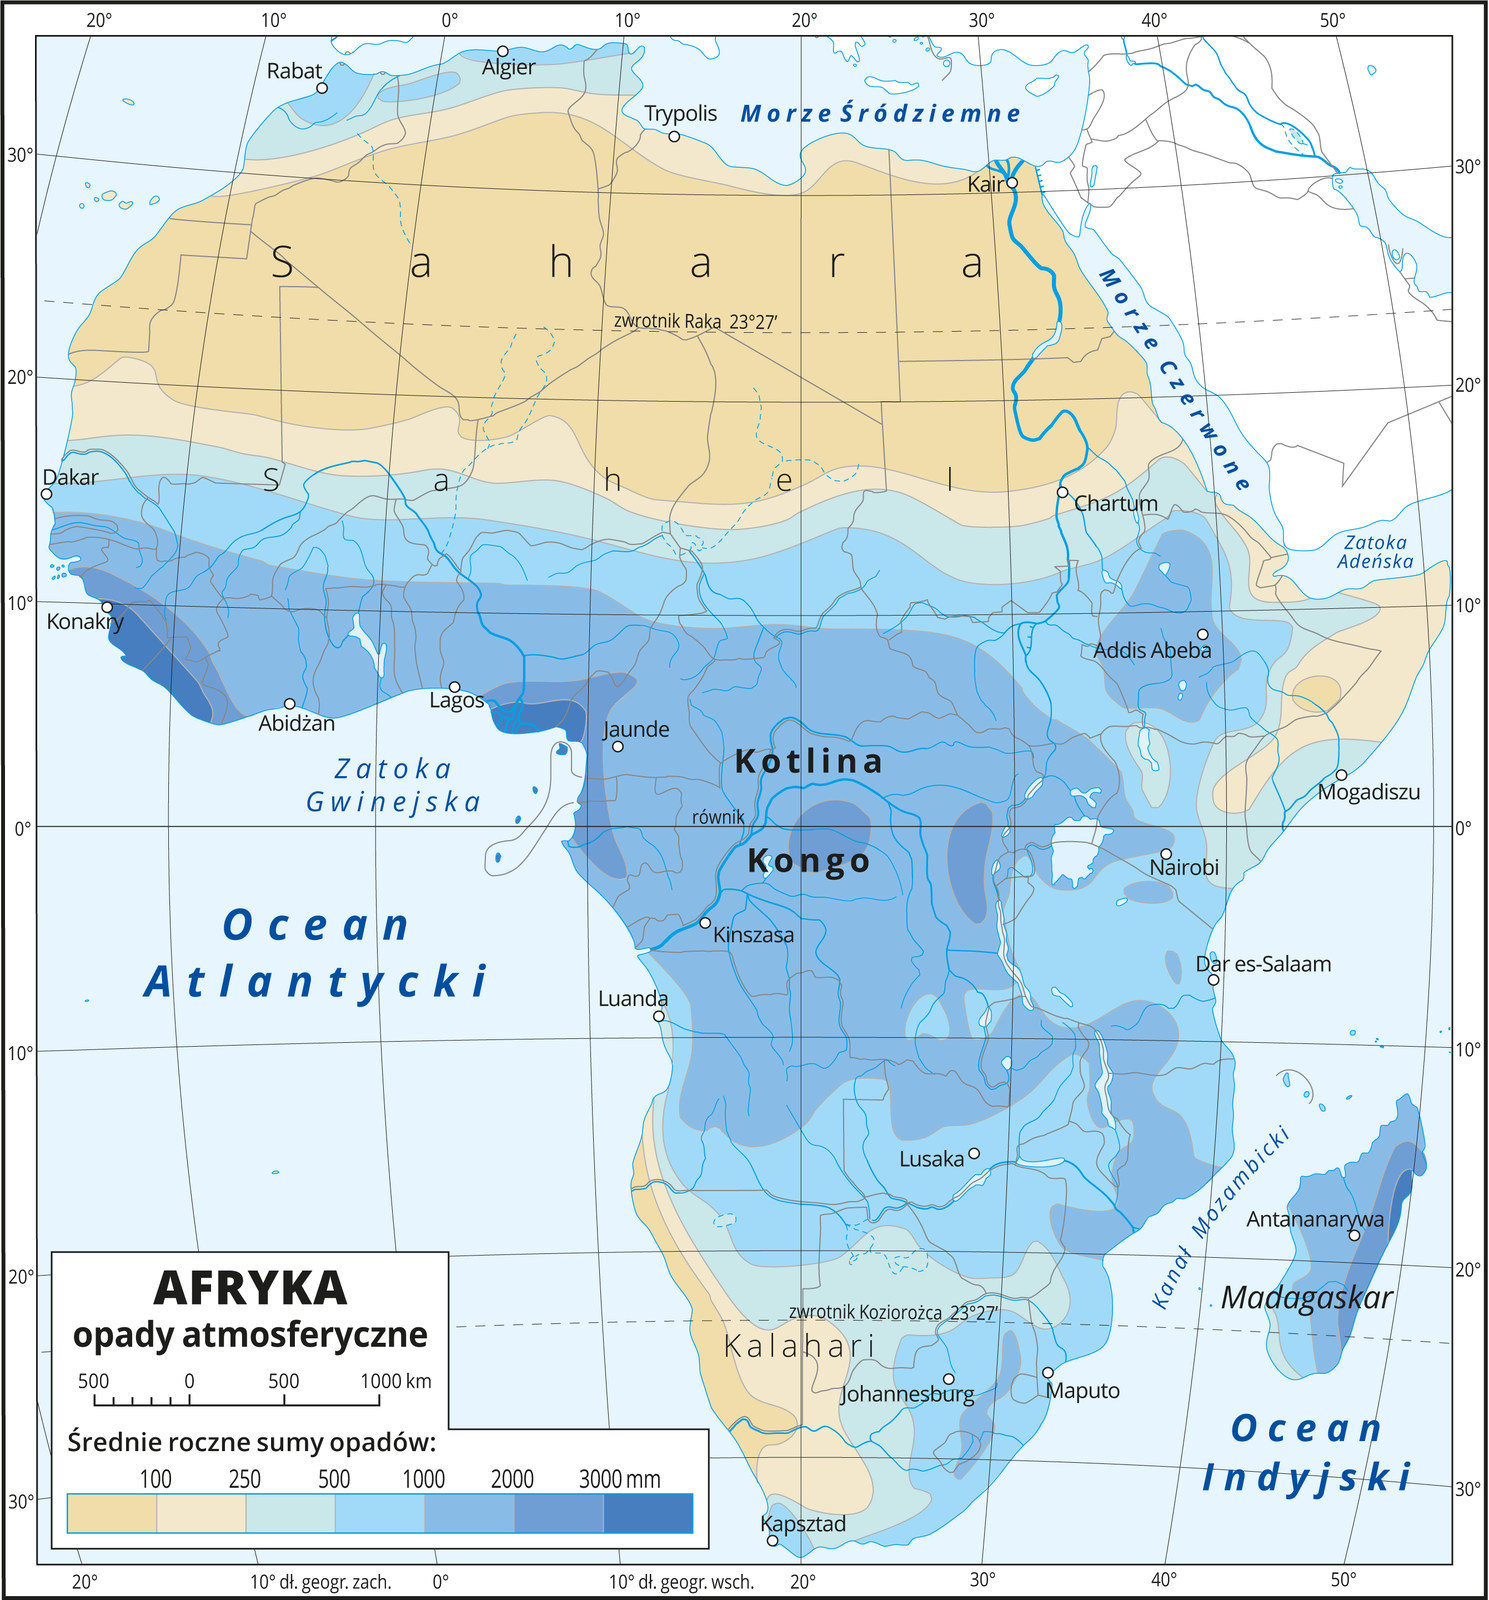 Ilustracja przedstawia mapę Afryki. W lewym dolnym roku mapy legenda opisująca wielkość rocznych opadów. Użyto kolorów od jasnożółtego (najmniejsza suma opadów) do ciemnoniebieskiego (największa suma opadów), oznaczone przedziały to: od 0 do 100 mm, od 100 do 250 mm, od 250 do 500 mm, od 500 do 1000 mm, od 1000 do 2000 mm, od 2000 do 3000 mm. Kolorami przedstawiono średnie roczne sumy opadów. Największe sumy roczne opadów występują w Afryce Zachodniej, nad Zatoką Gwinejską, w Kotlinie Kongo oraz na Madagaskarze. Kolor ciemnoniebieski – opady powyżej dwóch tysięcy milimetrów – obszary wokół równika. Im dalej od równika na północ i południe, tym mniejsze roczne sumy opadów (kolory niebieskie i jasnoniebieskie), aż do terenów pustynnych na północy (Sahara), południu (Pustynia Kalahari) i wschodzie (Półwysep Somalijski) z sumą opadów poniżej stu milimetrów przedstawionych kolorem żółtym. Pokazano także Madagaskar, na którym sumy rocznych opadów wahają się od tysiąca do trzech tysięcy milimetrów). Kolorowe pasy układają się równoleżnikowo. Morza zaznaczono kolorem niebieskim i opisano. Mapa pokryta jest równoleżnikami i południkami. Dookoła mapy w białej ramce opisano co dziesięć stopni południki i równoleżniki. W legendzie opisano kolory użyte na mapie.